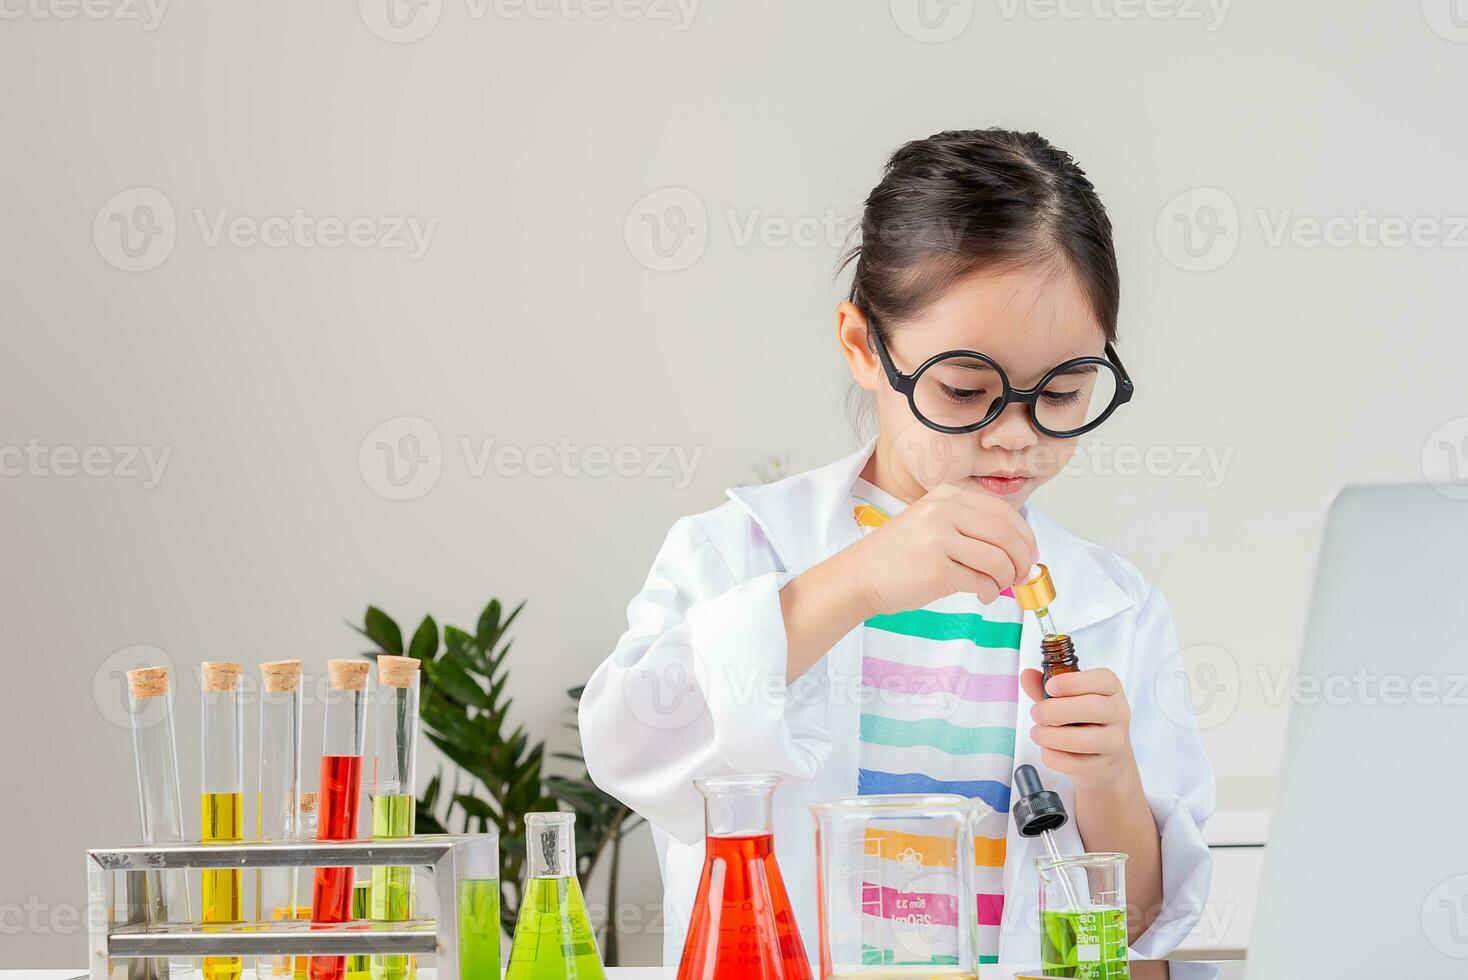 asiatisch wenig Mädchen Arbeiten mit Prüfung Tube Wissenschaft Experiment im Weiß Klassenzimmer foto